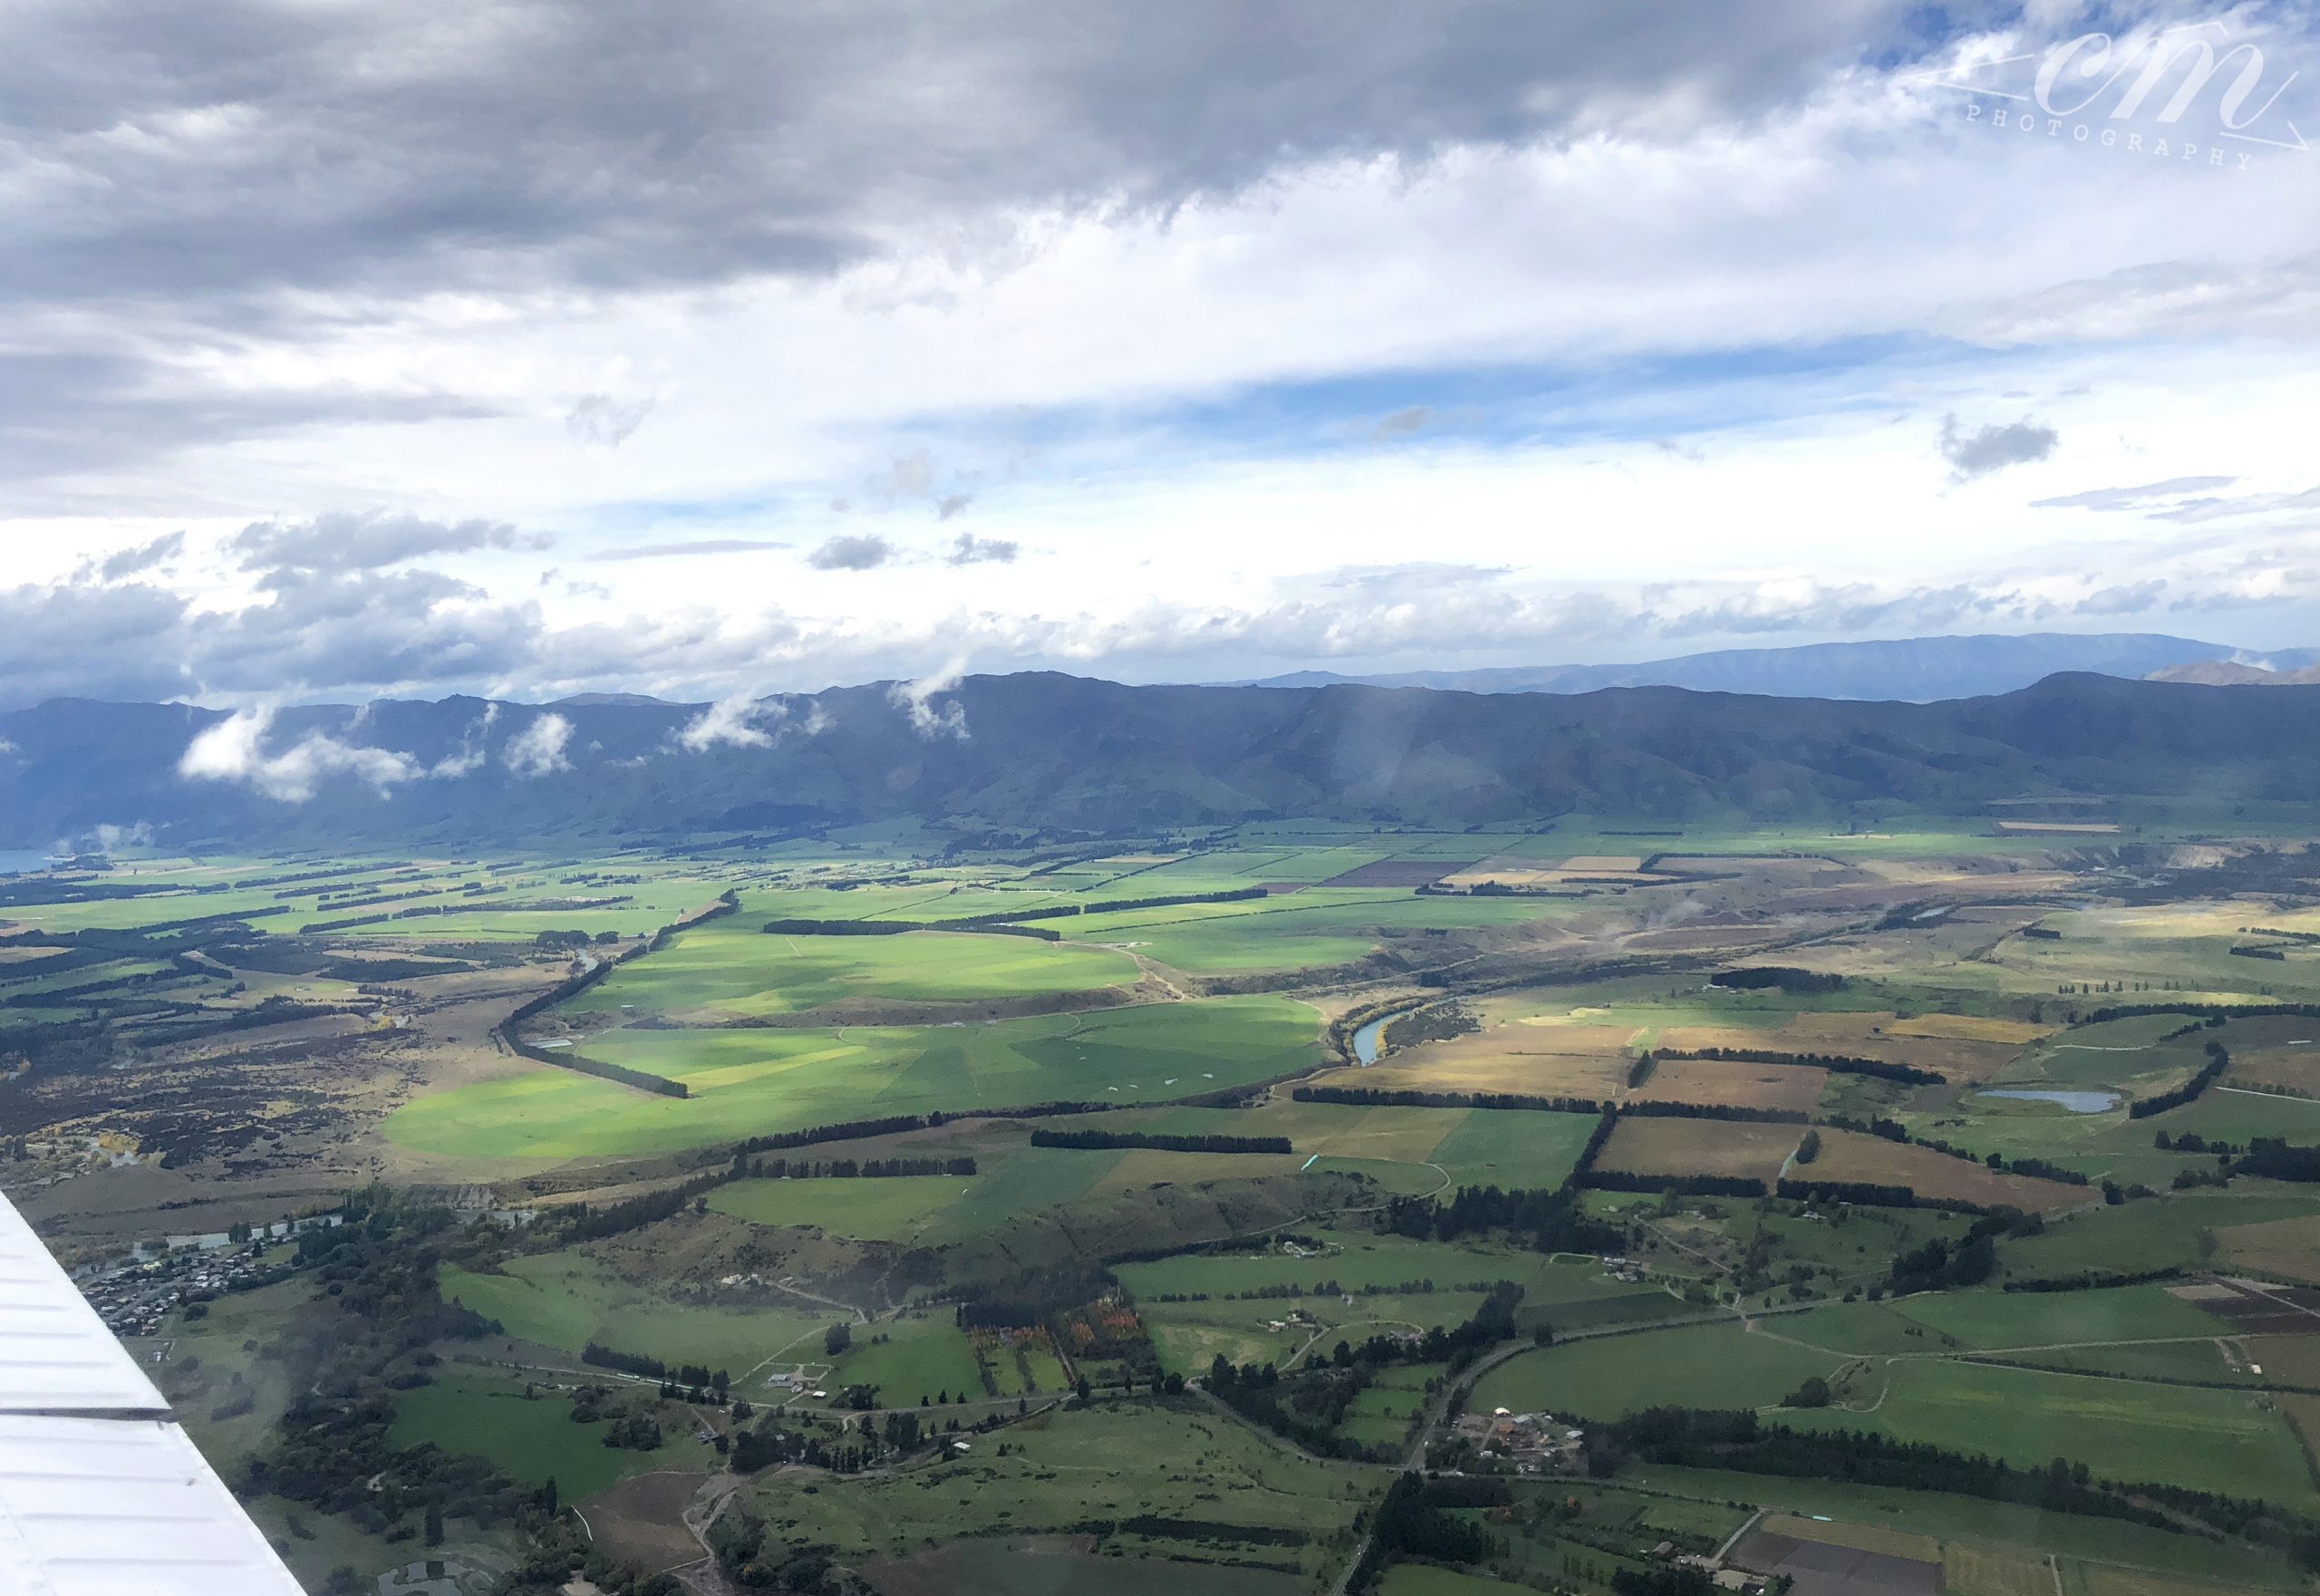 紐西蘭南島wanaka自駕小飛機learn to fly